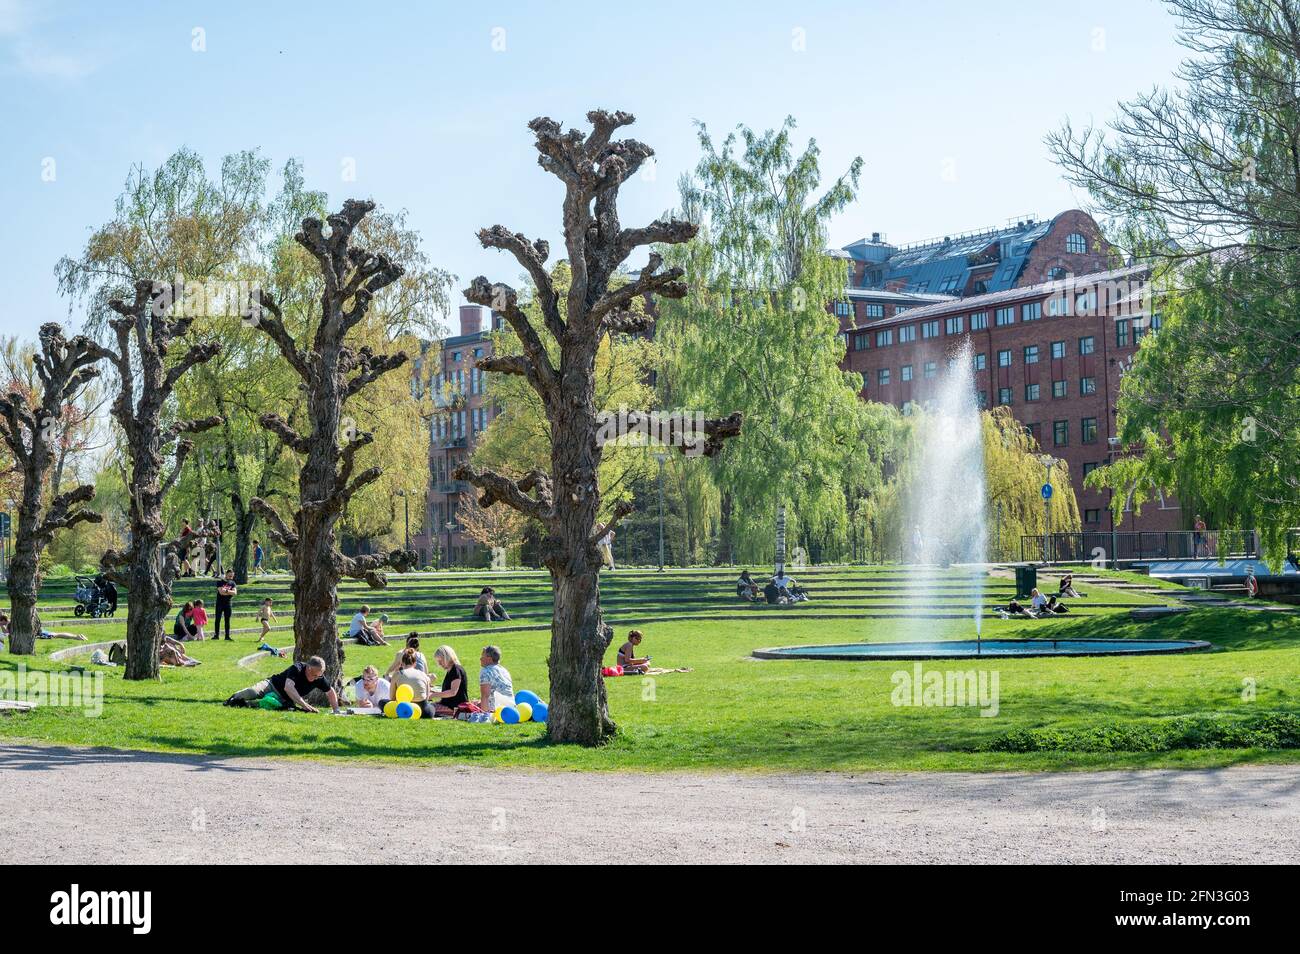 La gente gode di una soleggiata giornata primaverile nel parco cittadino di Strömparken, Norrköping in Svezia Foto Stock